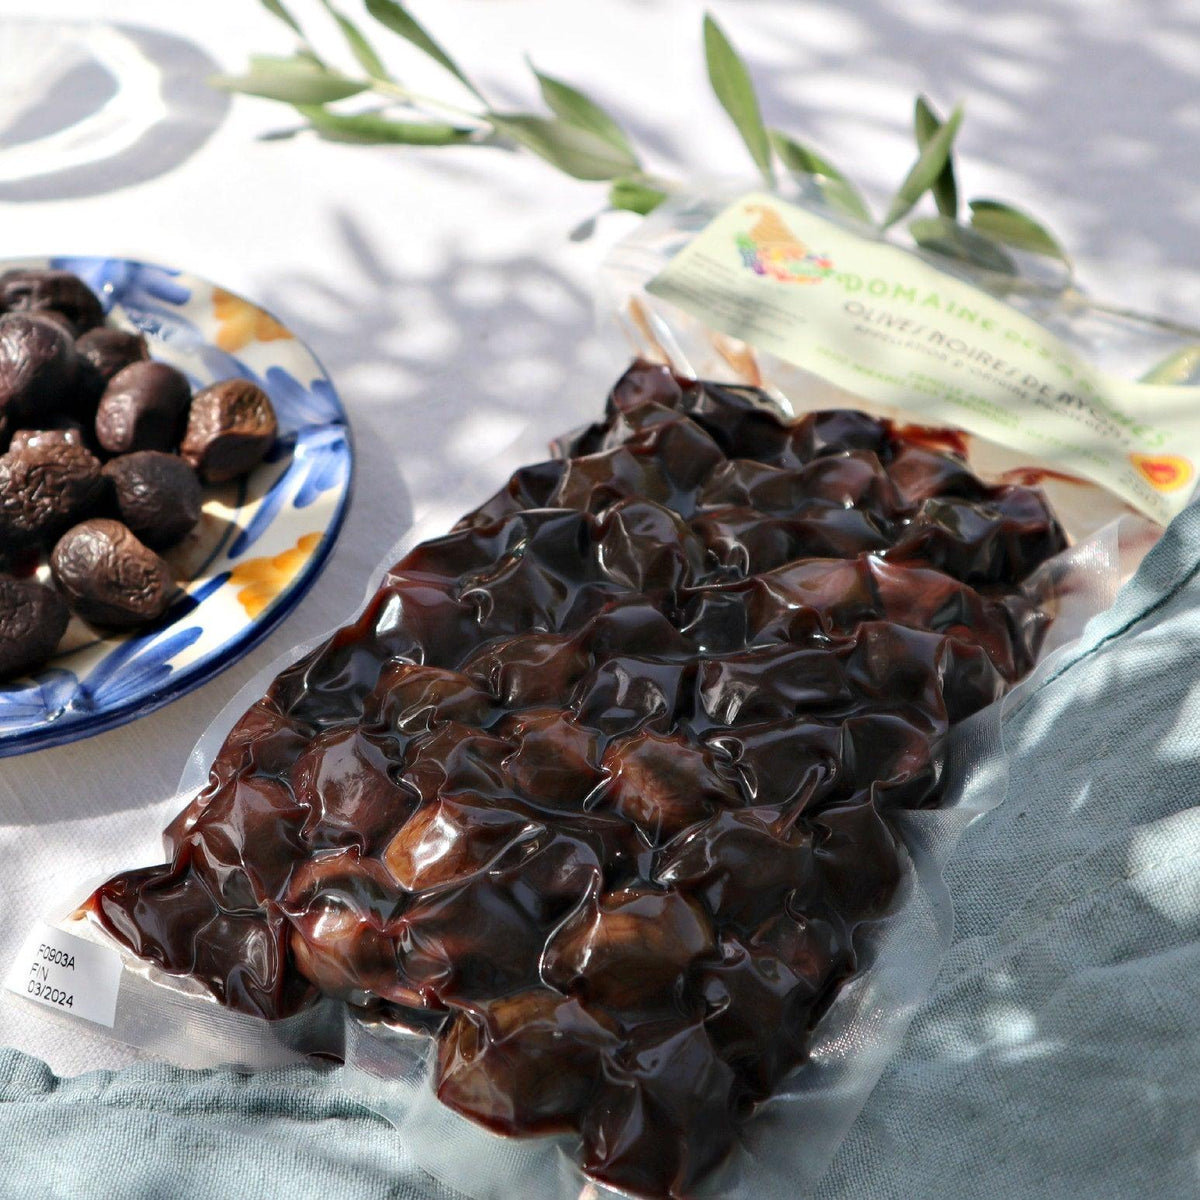 Oliven aus Nyons Würzmittel La Sariette 